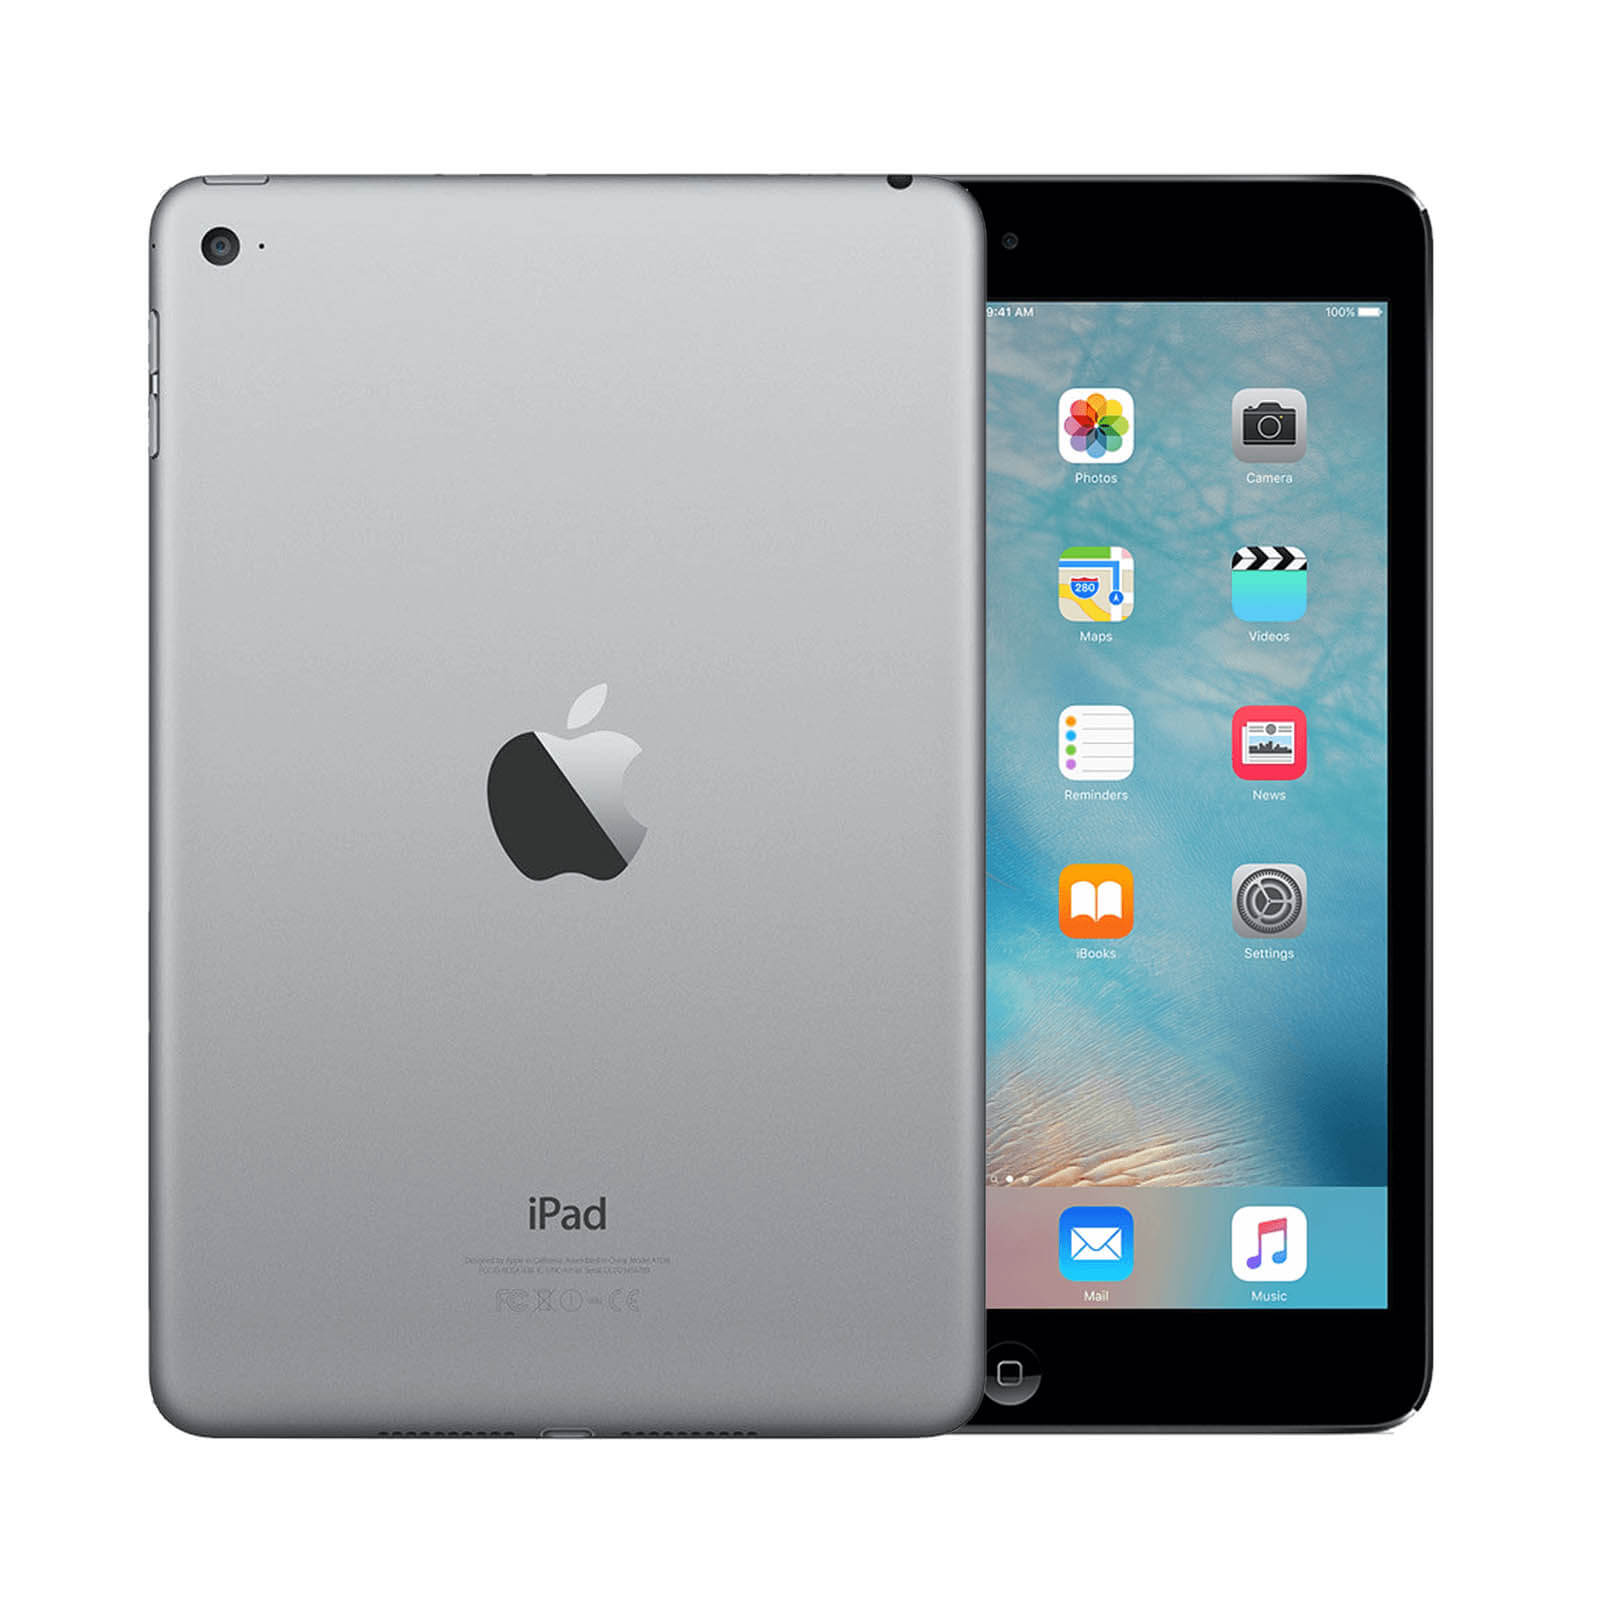 Apple iPad Mini 4 64GB Space Grey WiFi - Good 64GB Space Grey Good